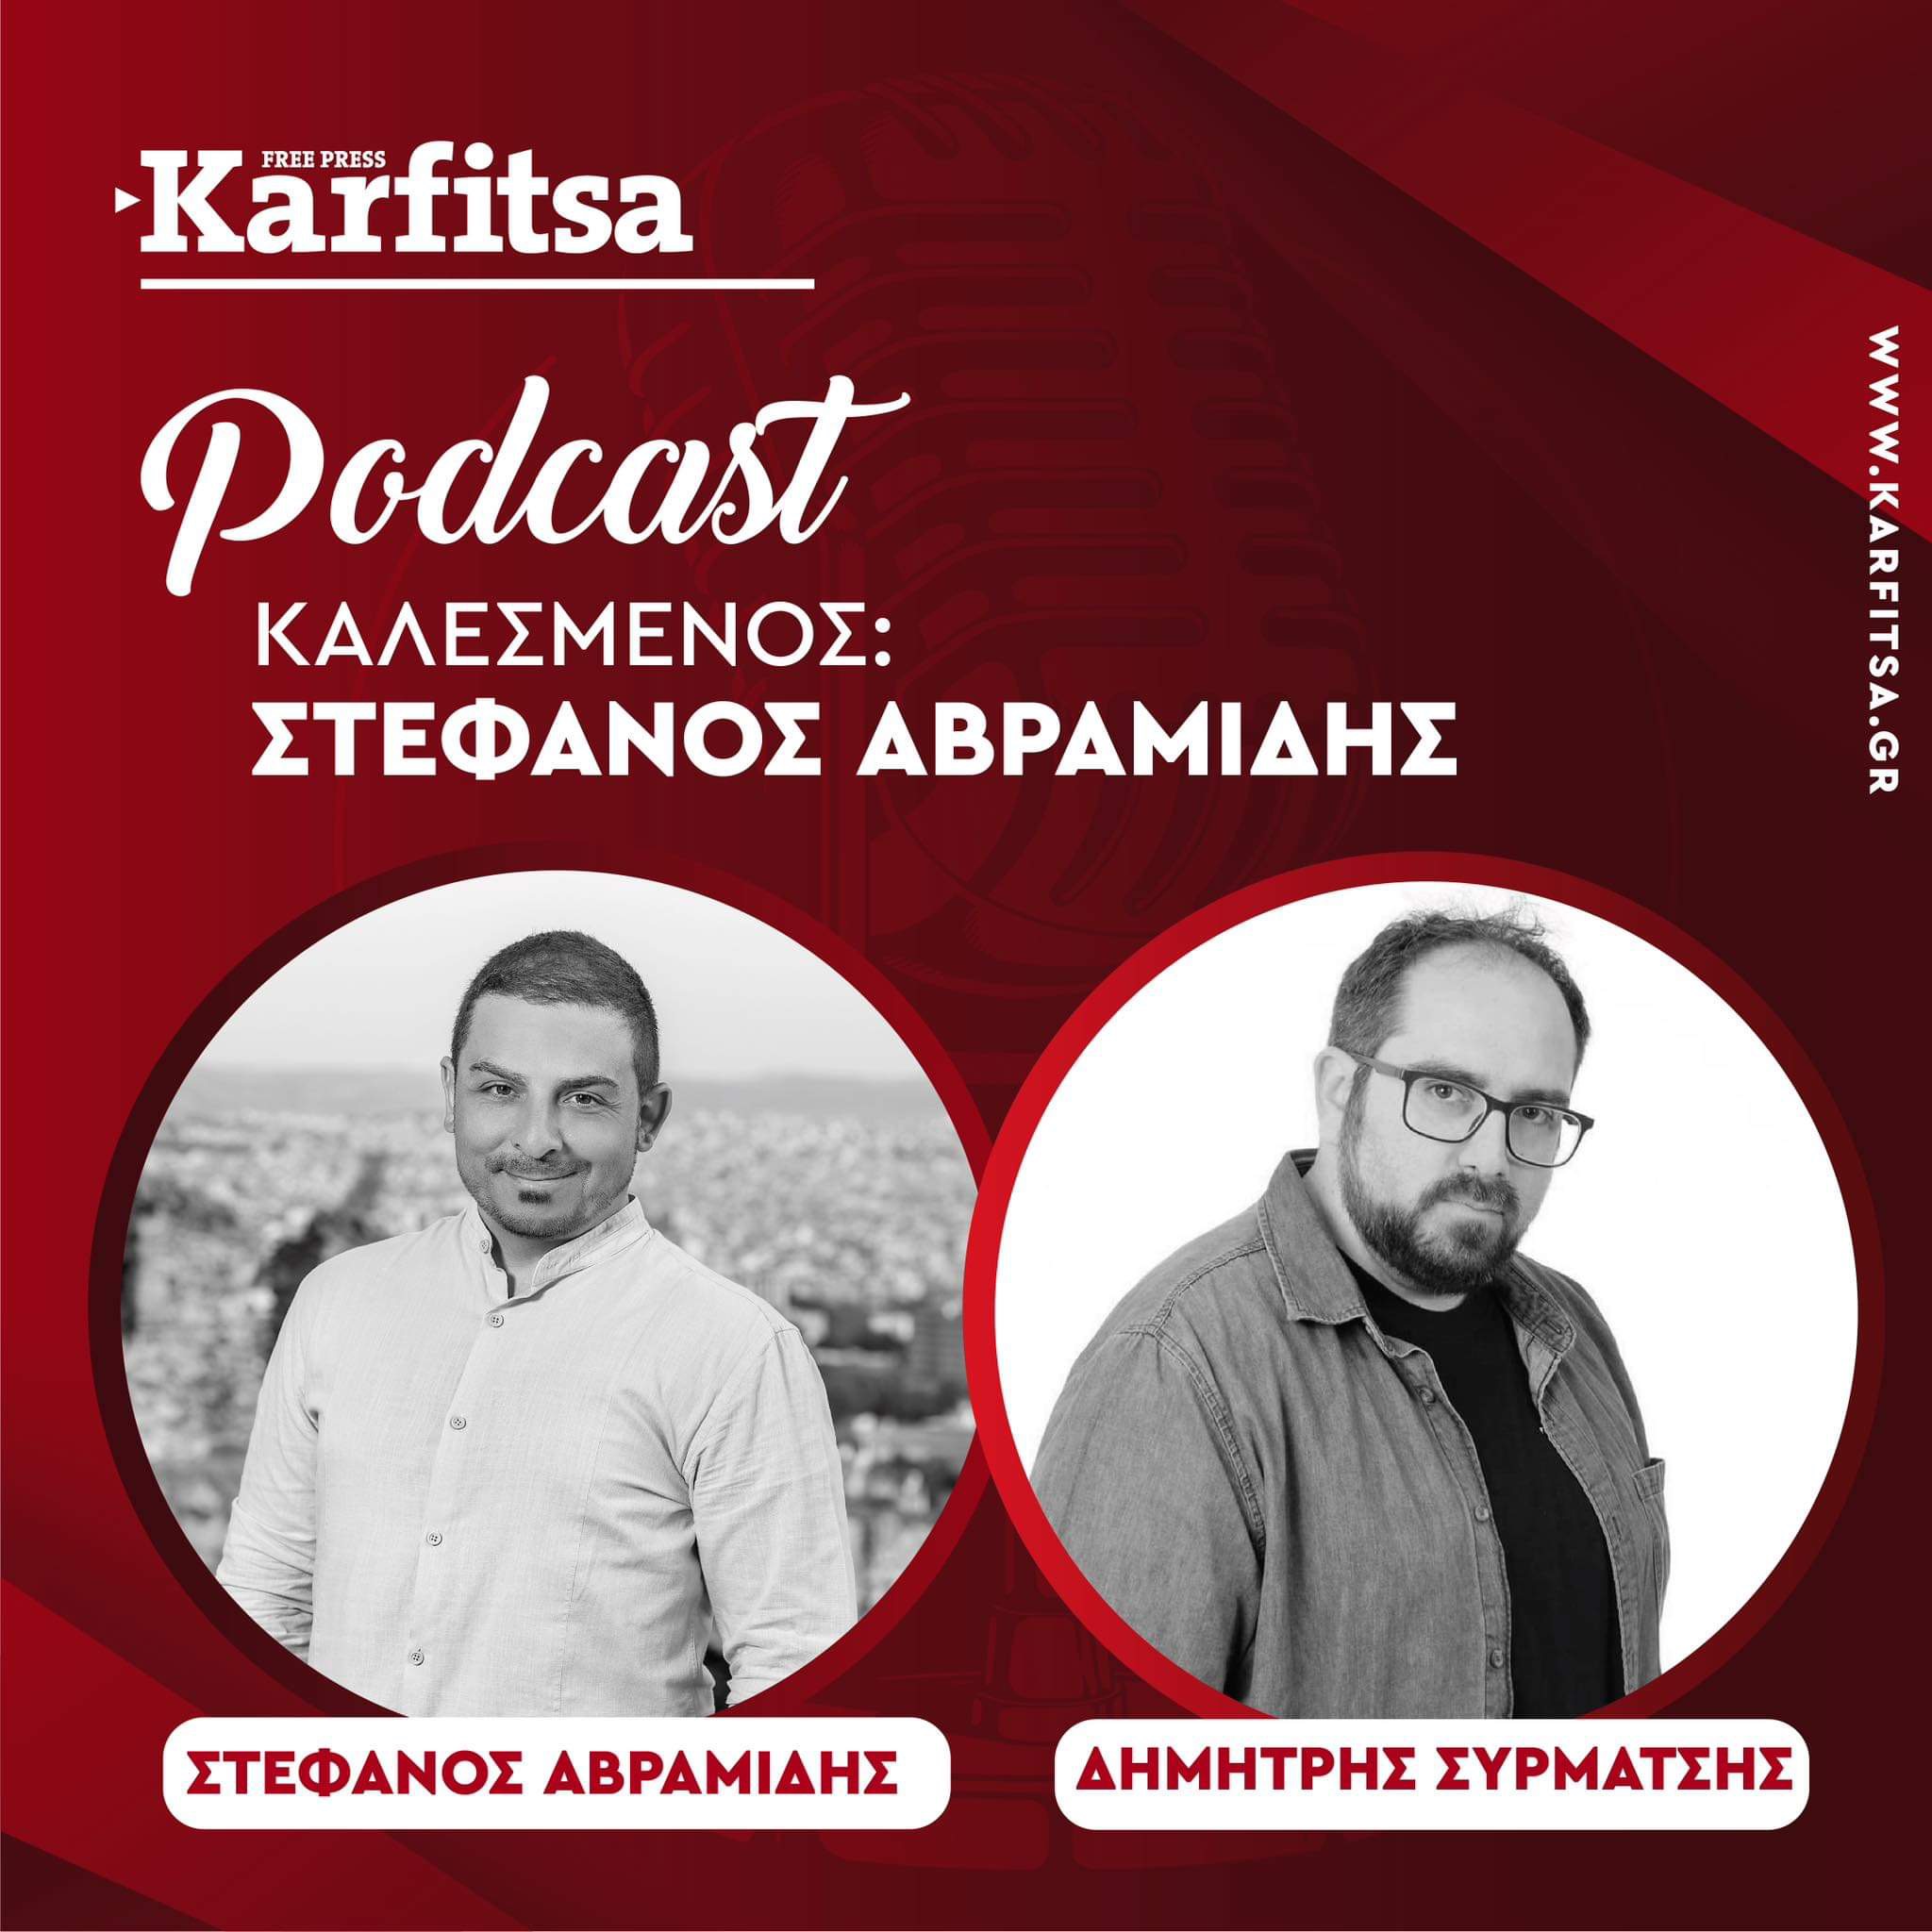 Ο Στέφανος Αβραμίδης μιλάει για την Θεσσαλονίκη και την… ξεχασμένη Τριανδρία (Podcast)